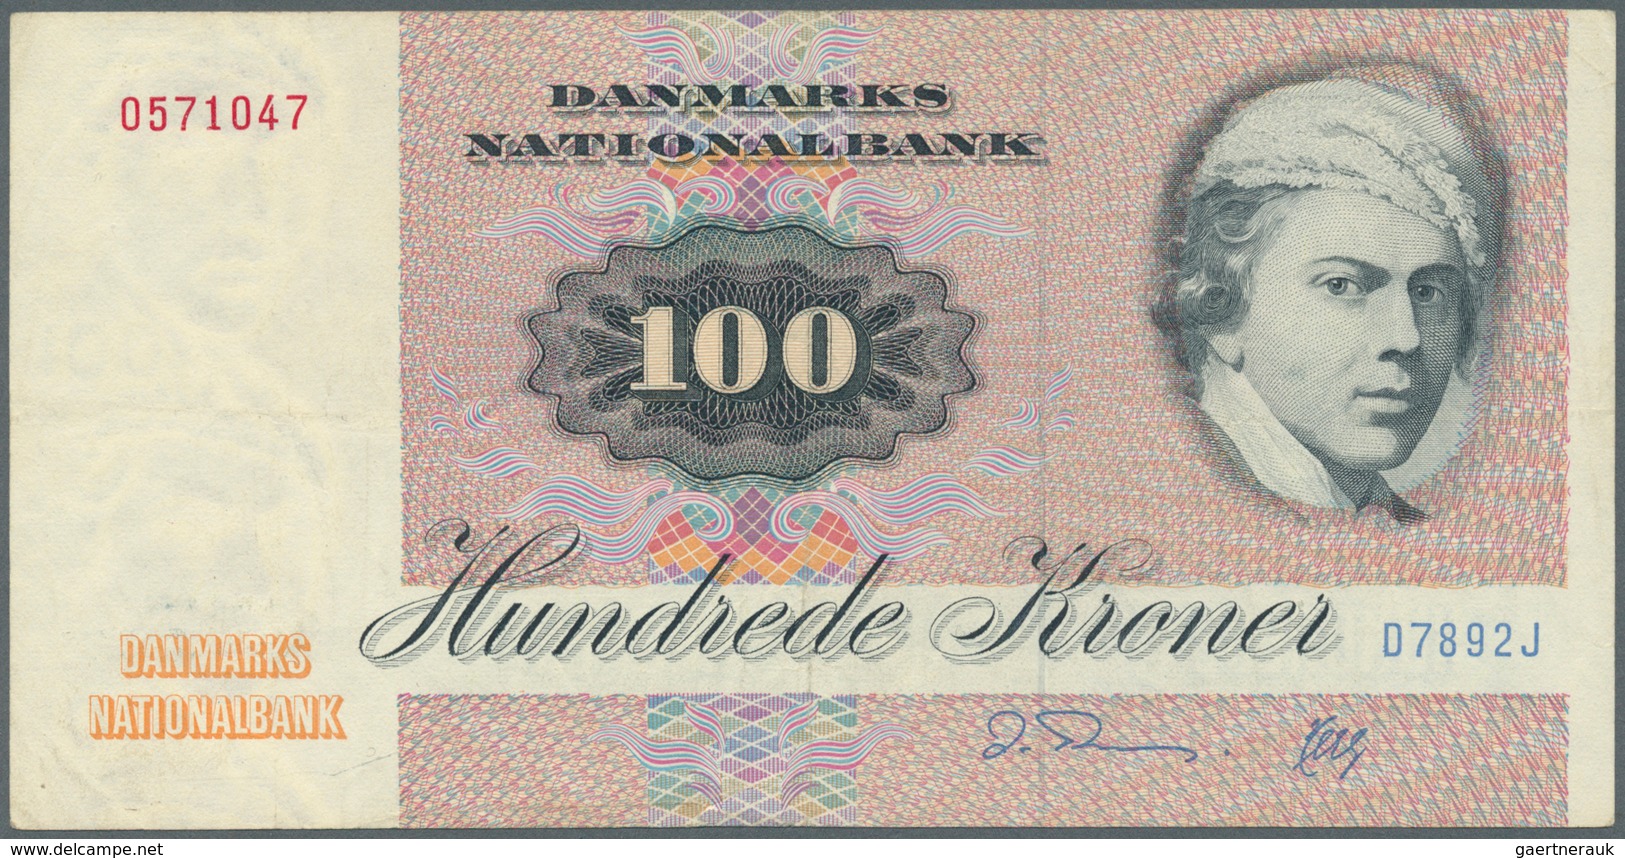 Denmark  / Dänemark: set of 10 notes containing 10 Kroner 1976 & 1977 P. 48 (XF & UNC), 2x 20 Kroner